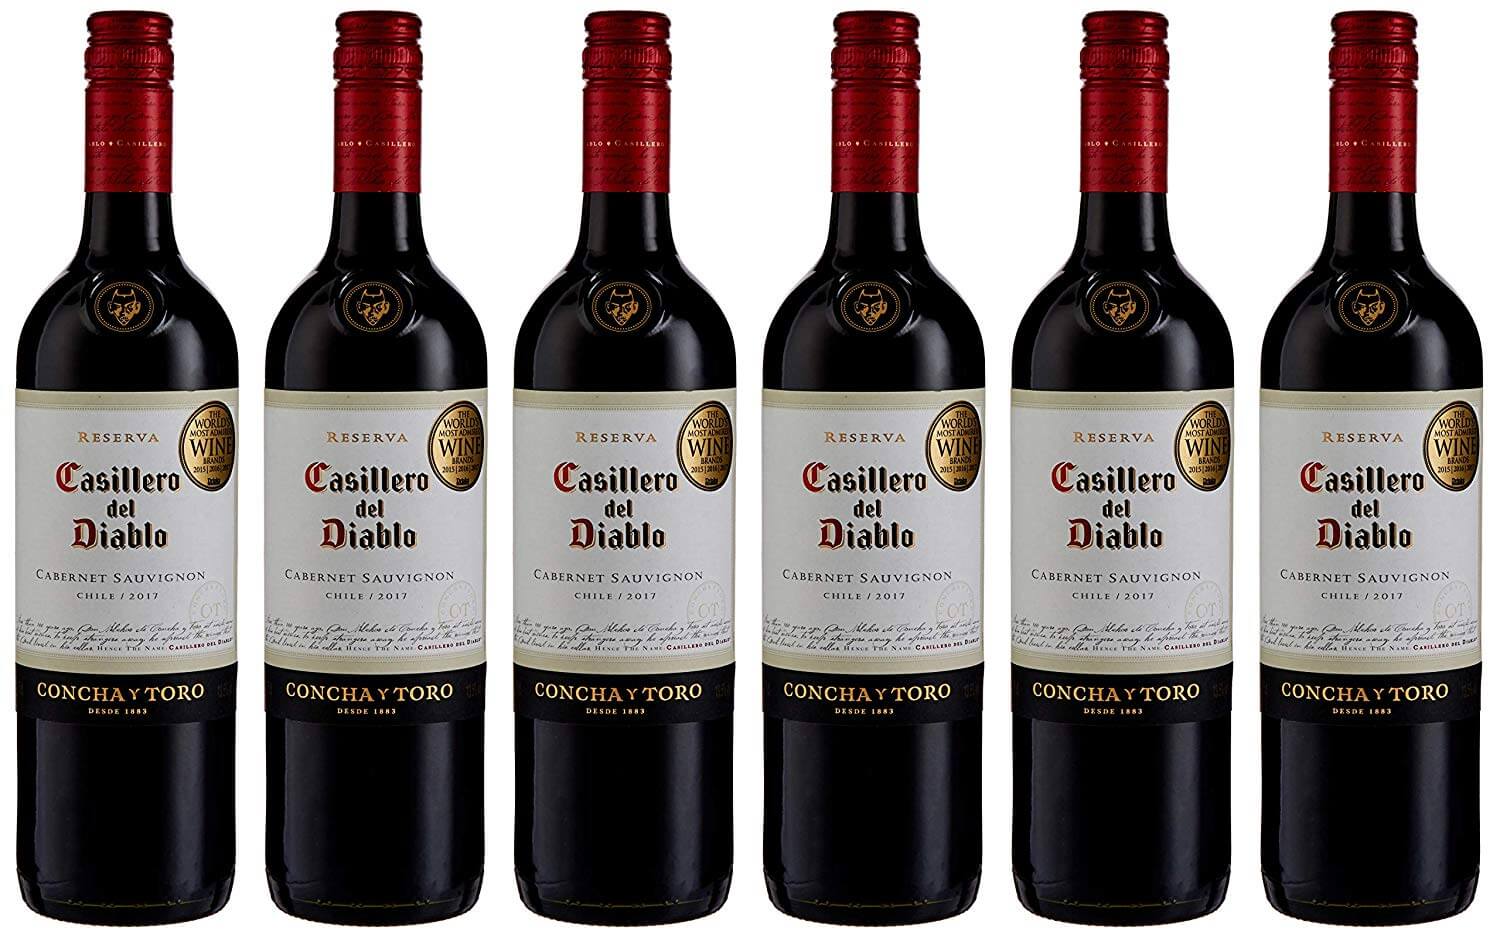 Casillero del diablo cabernet sauvignon: обзор вина, характеристики